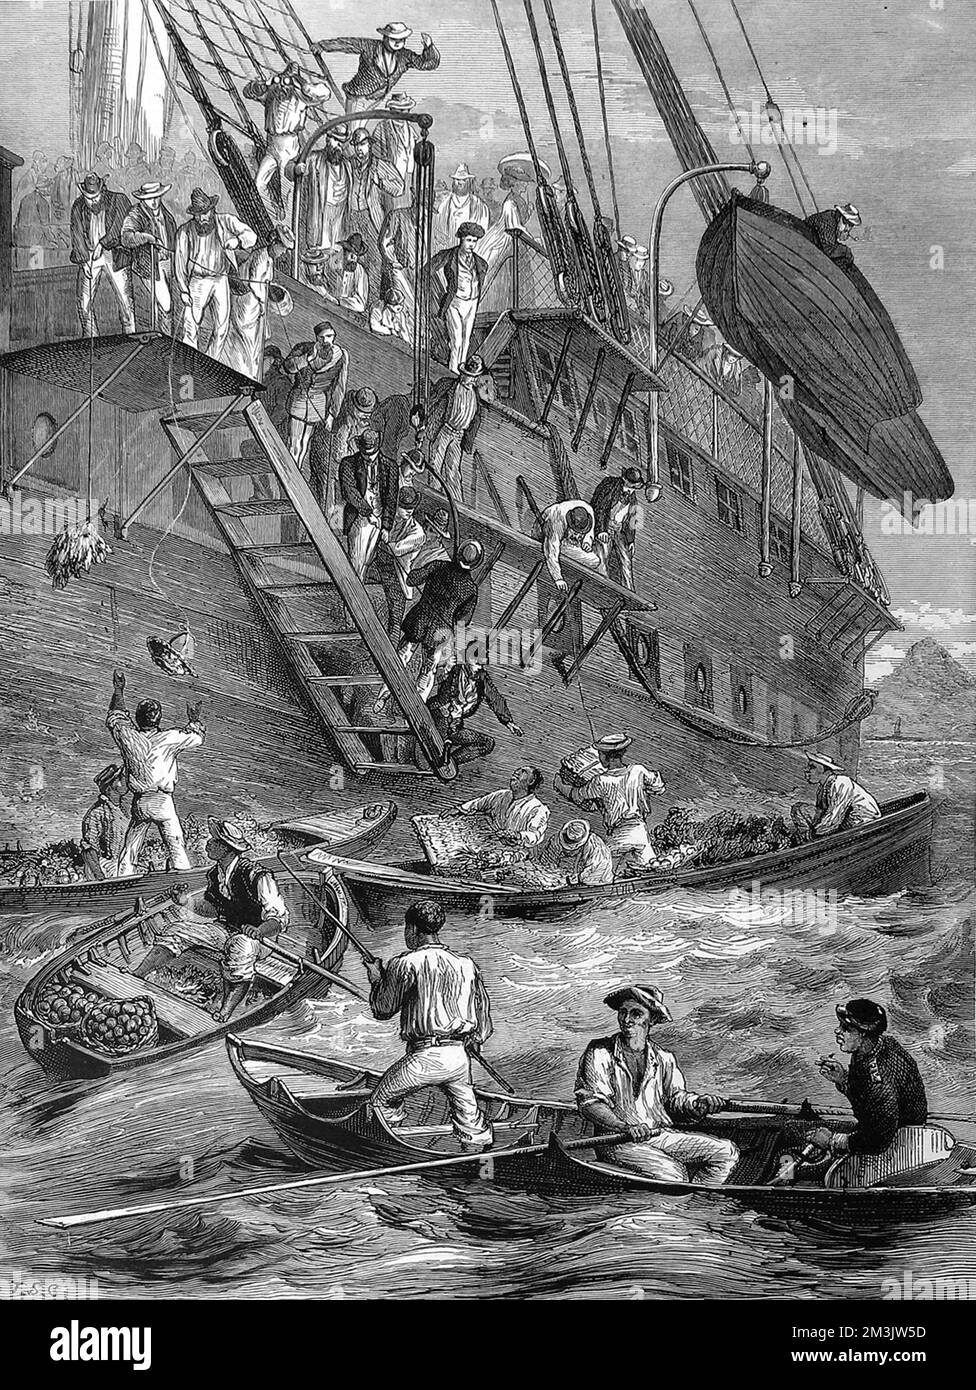 Nave passeggeri ancorata al largo dell'isola caraibica di St. Vincent, in quarantena. In primo piano dell'immagine si possono vedere i commercianti locali, nelle loro piccole barche, che portano il cibo alla nave passeggeri. 1873 Foto Stock